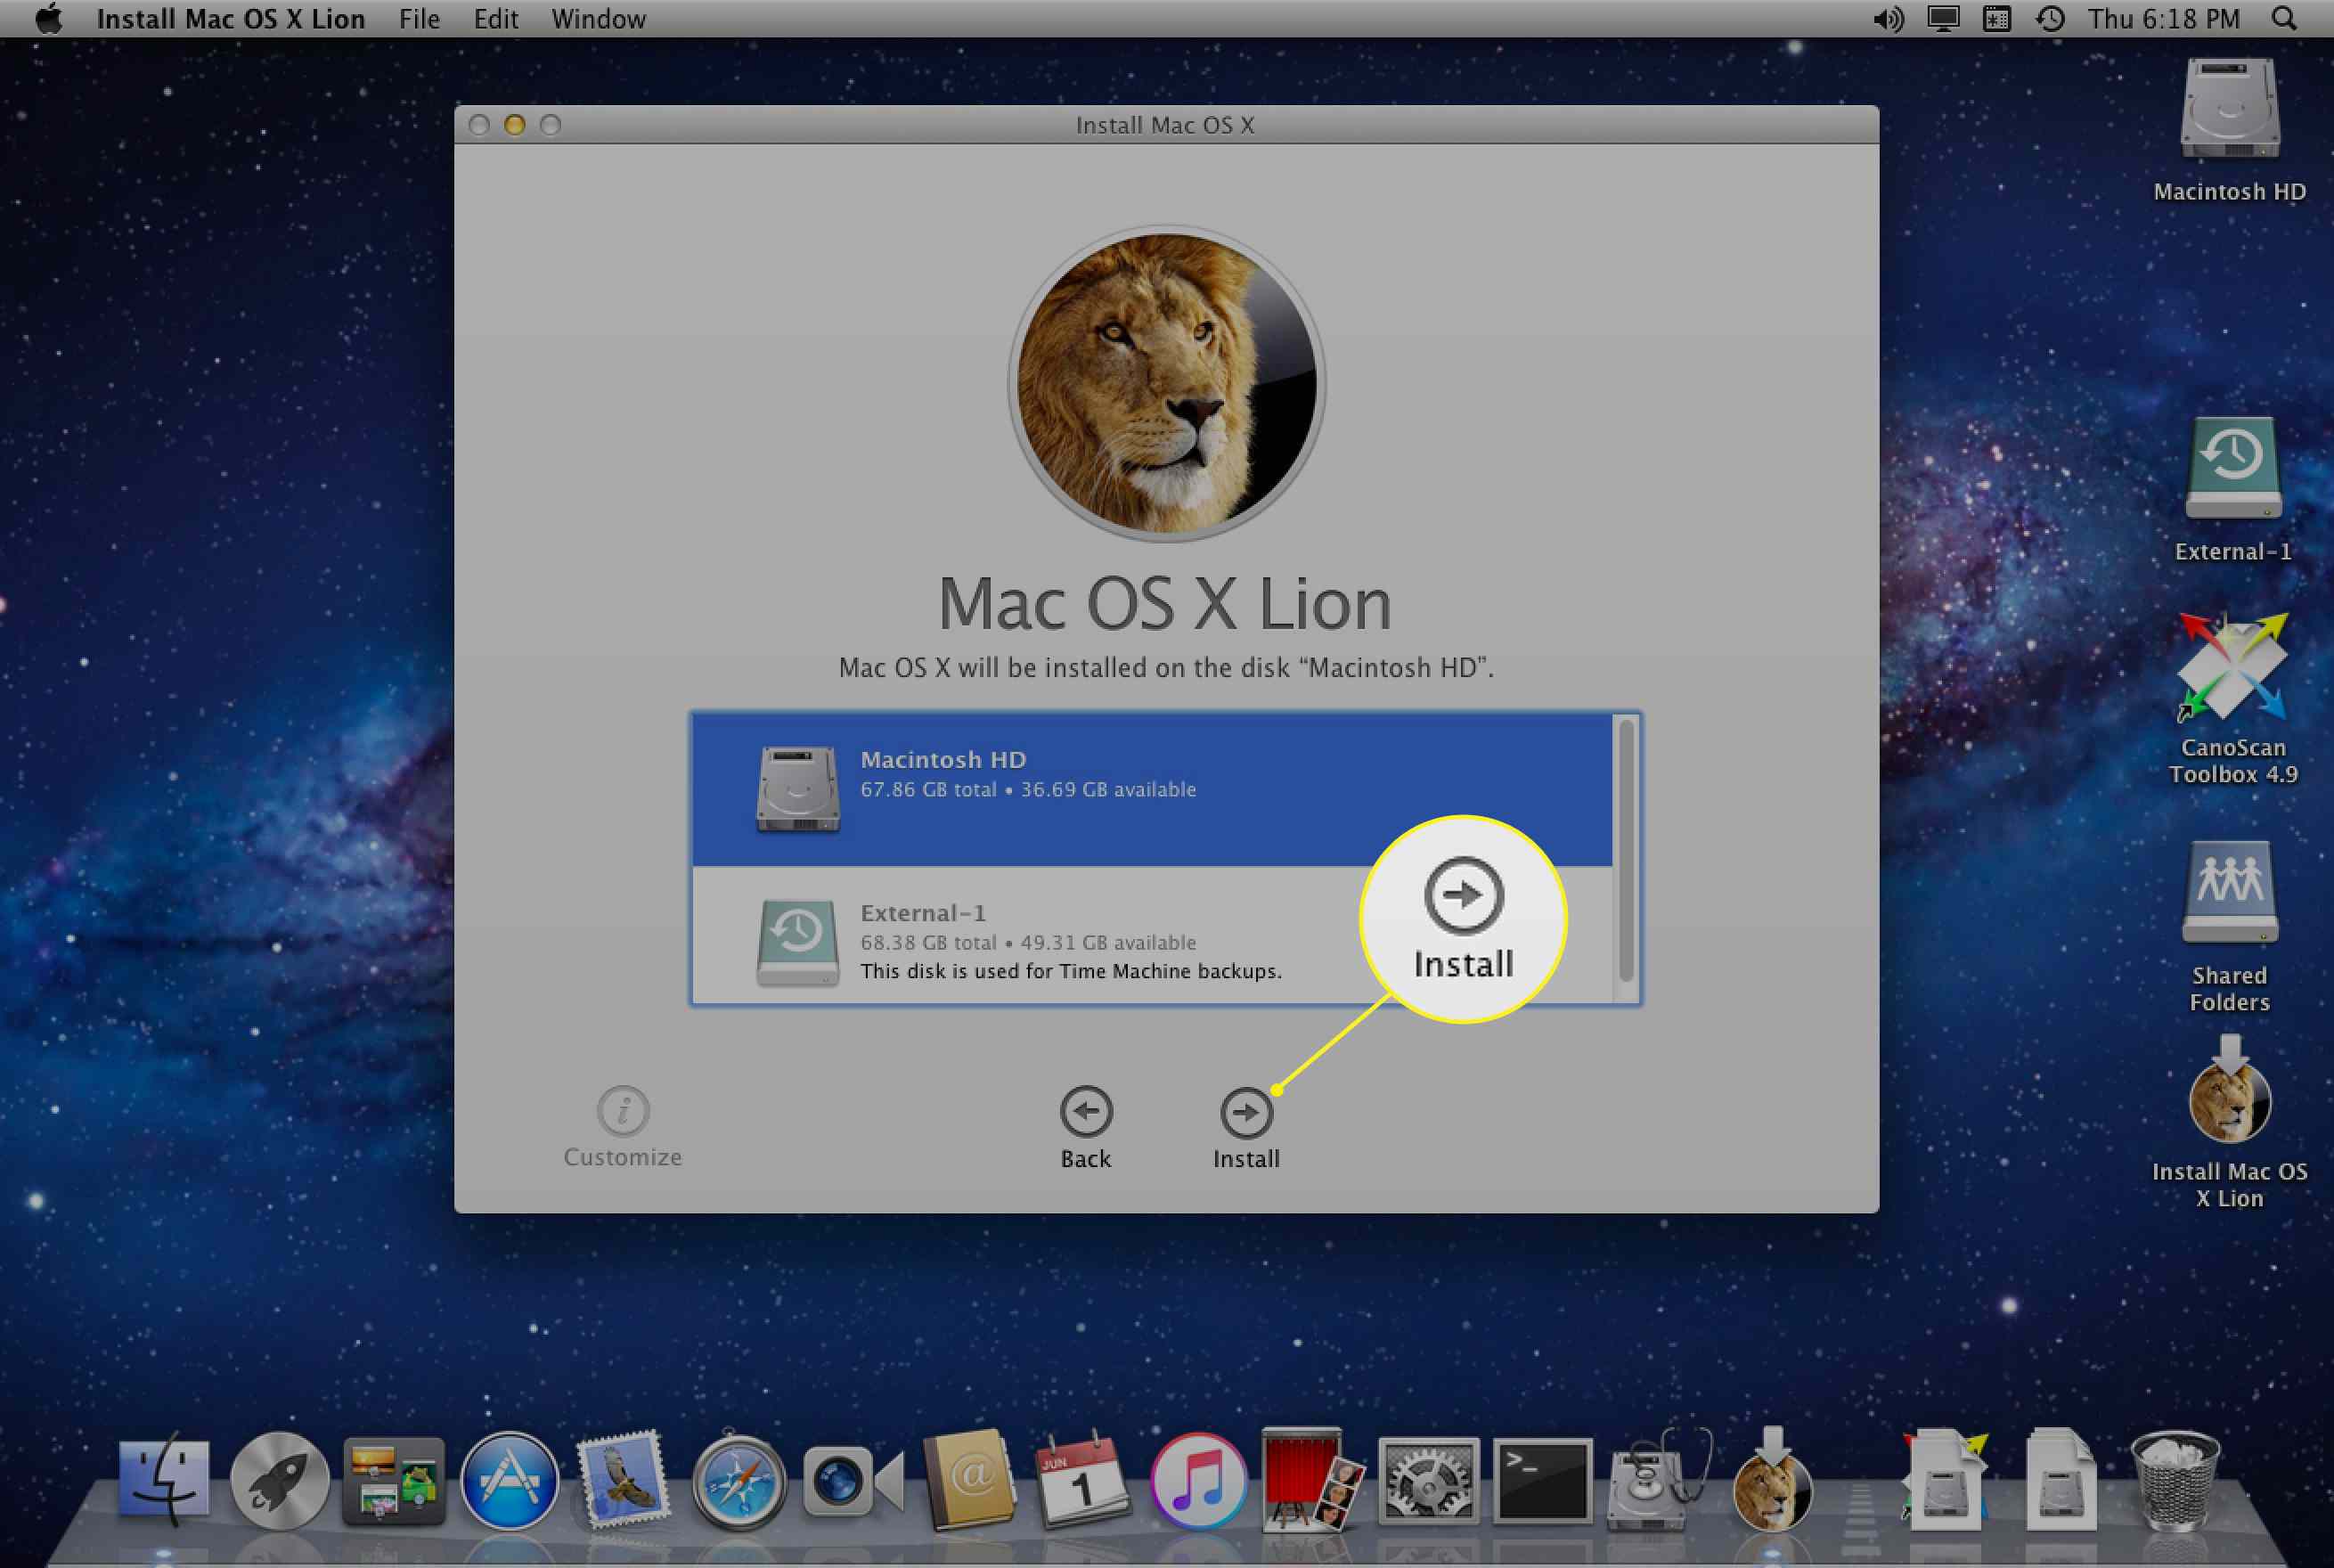 A tela de instalação do Mac OS X Lion com Instalar destacado